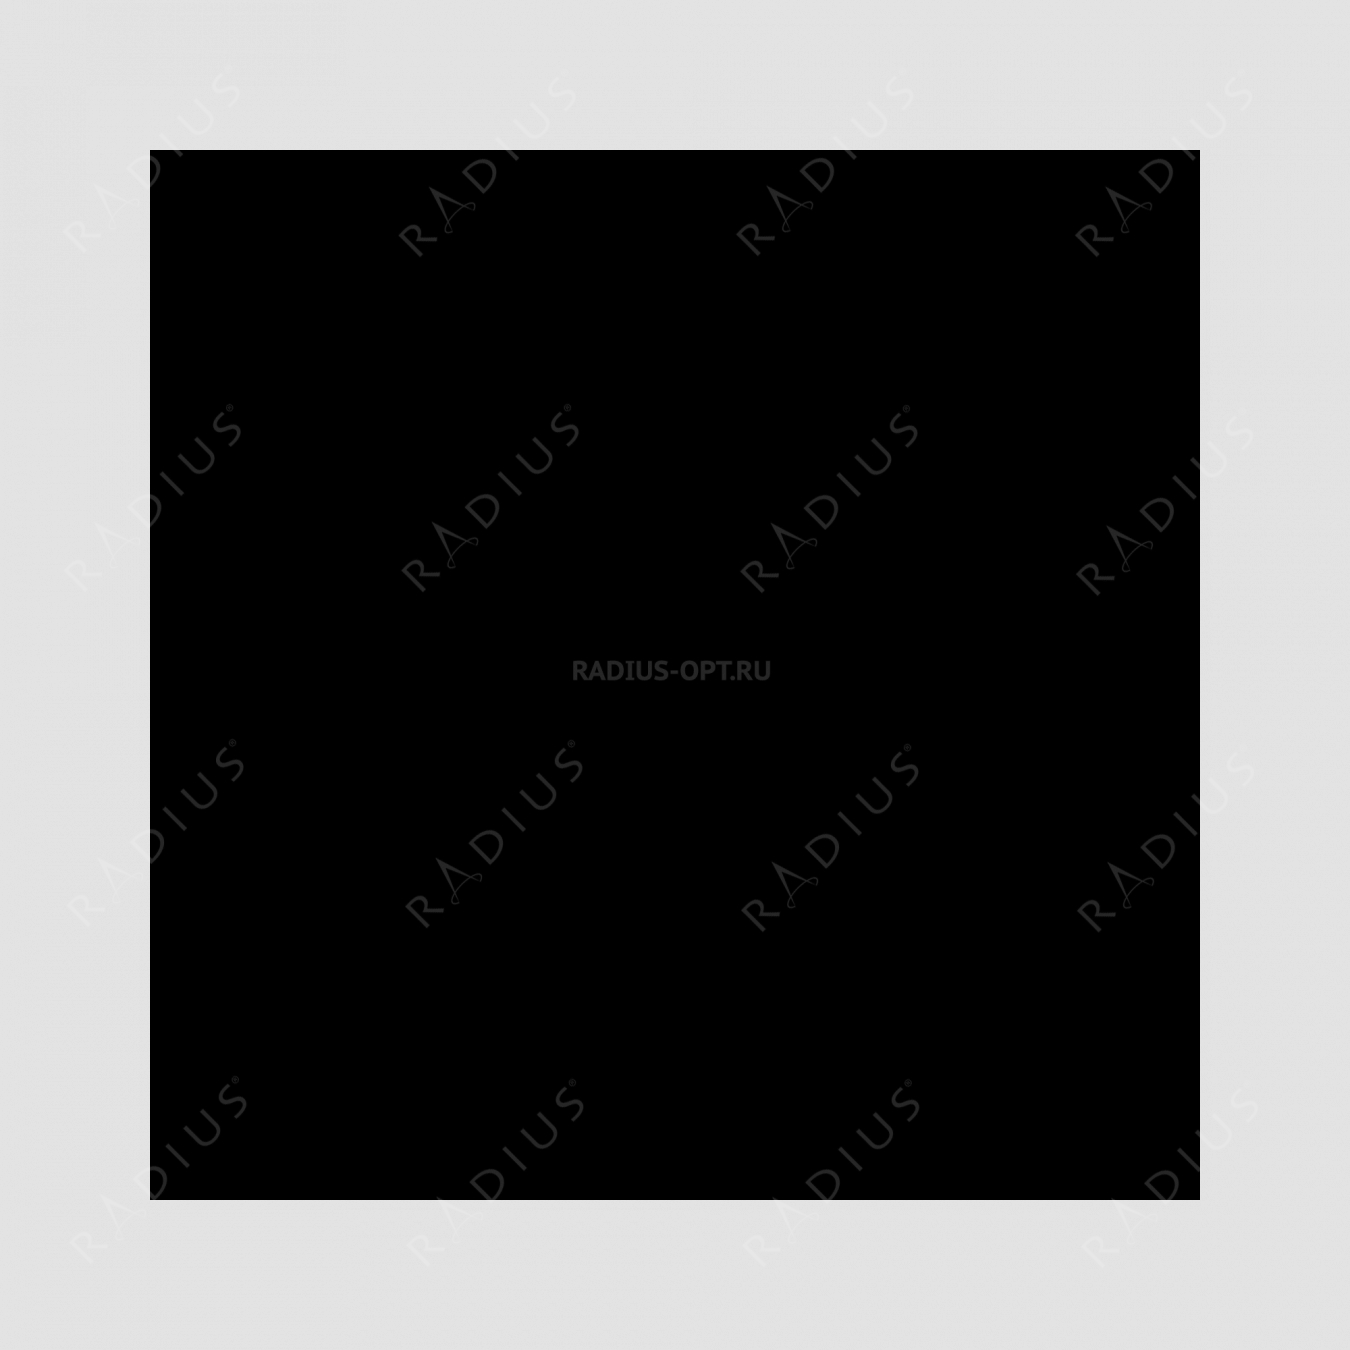 Кастрюля с крышкой, овальная, диаметр 27 см, объем 4,0 л, чугун с эмалированным покрытием, цвет темно-серый, серия Taupe, INVICTA, Франция